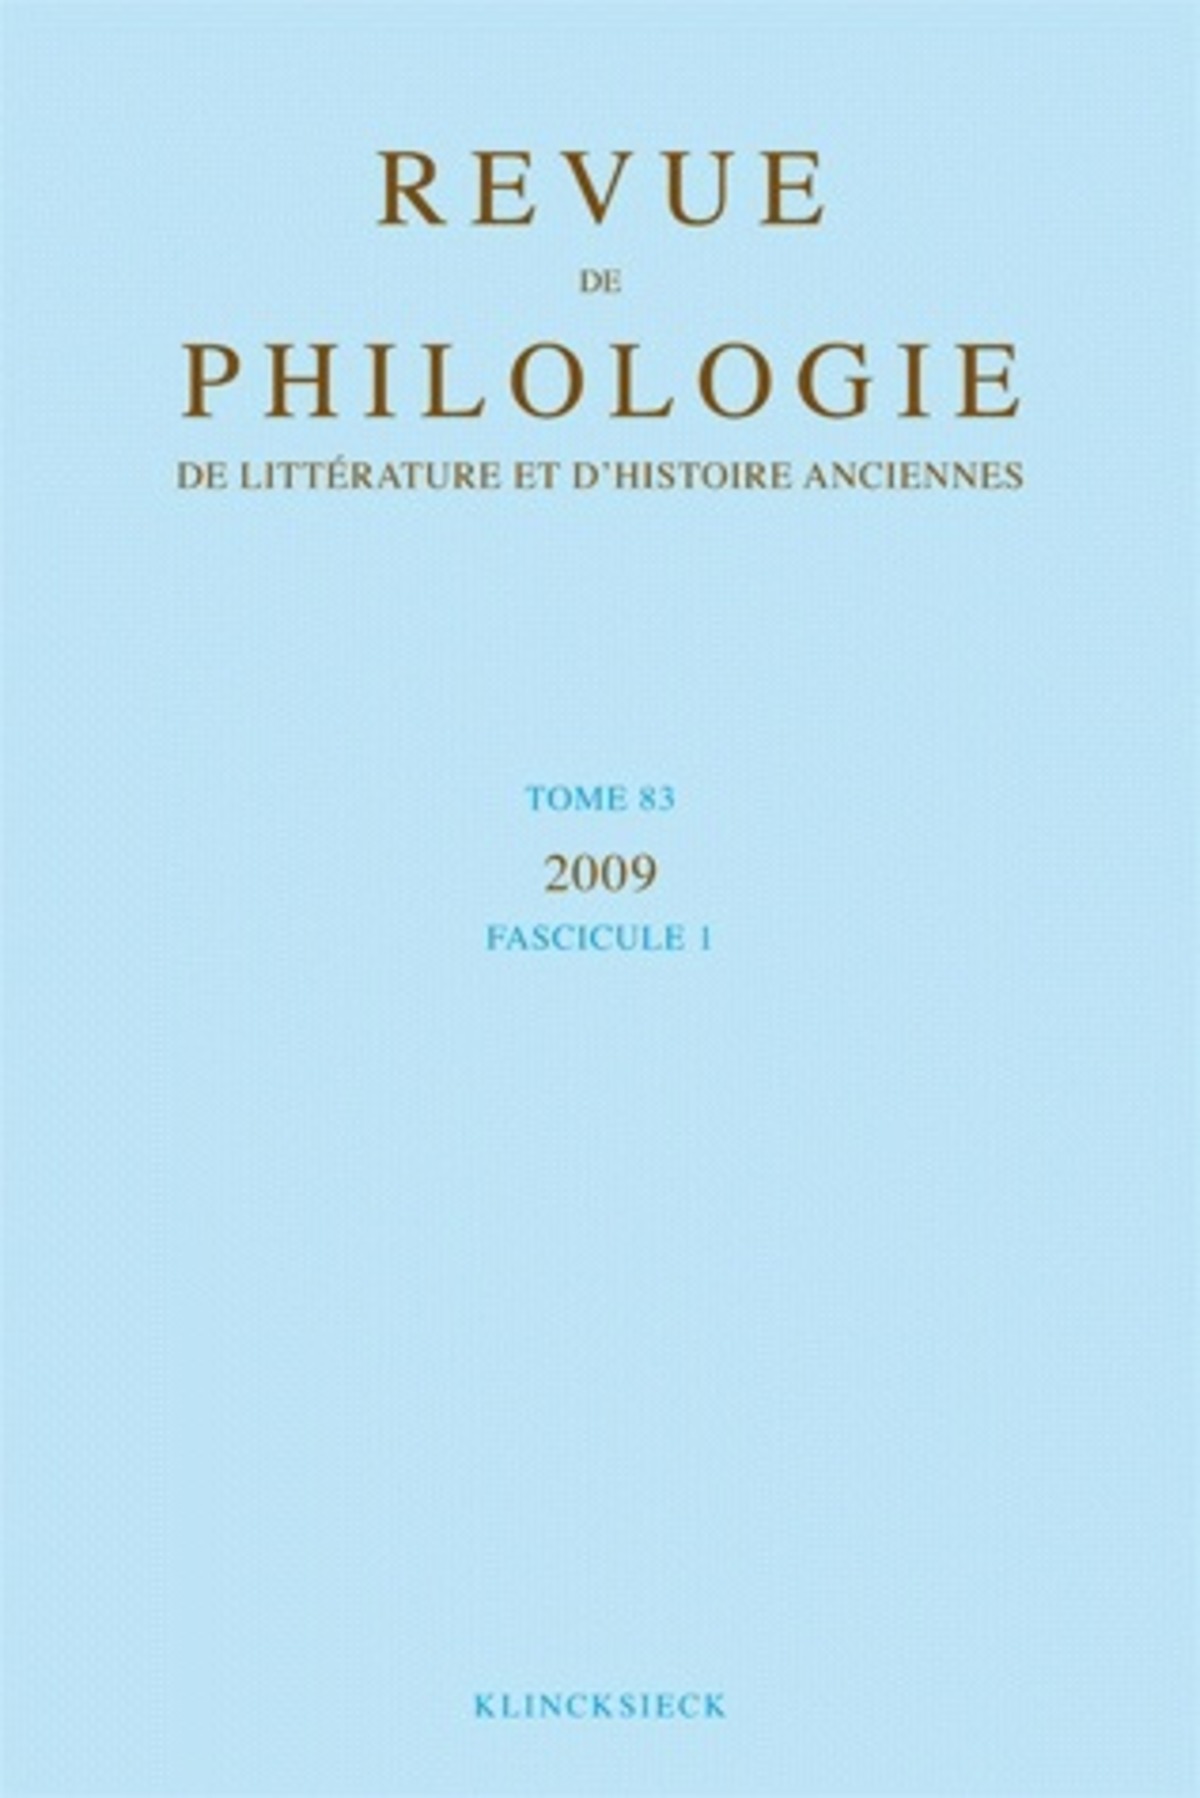 Revue de philologie, de littérature et d'histoire anciennes volume 83